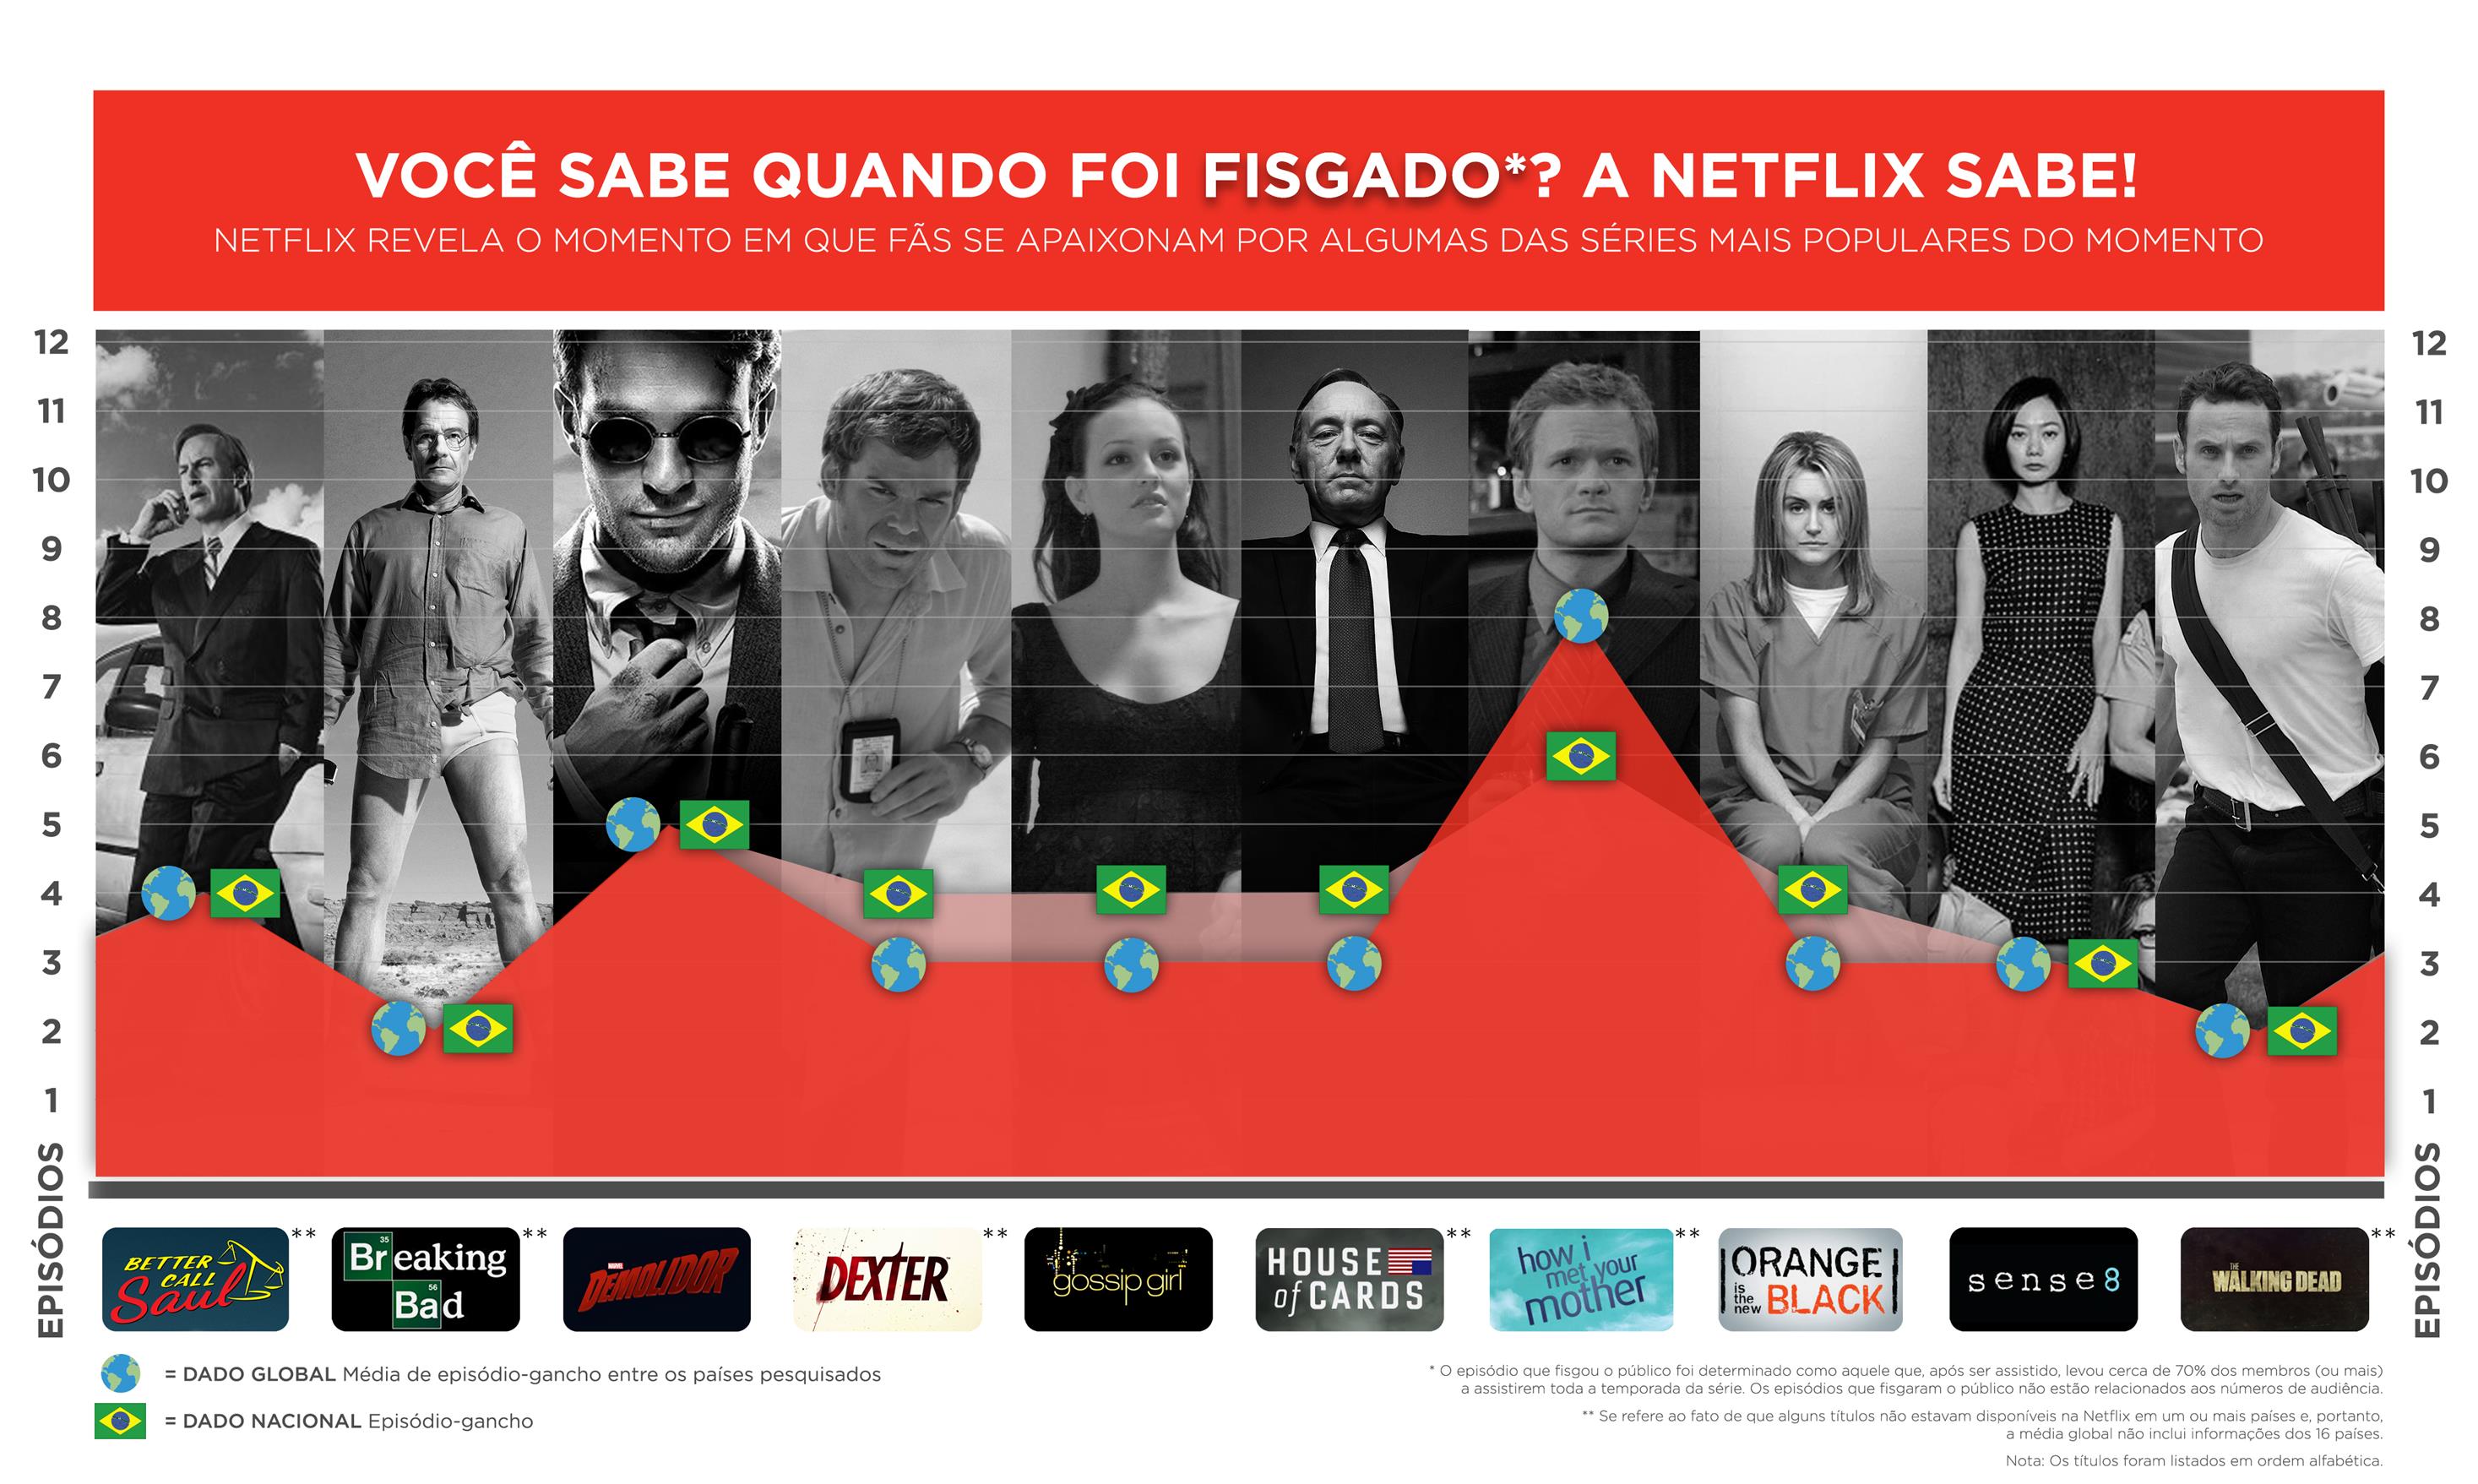 Netflix_Brazil_FINAL_baixa resolu